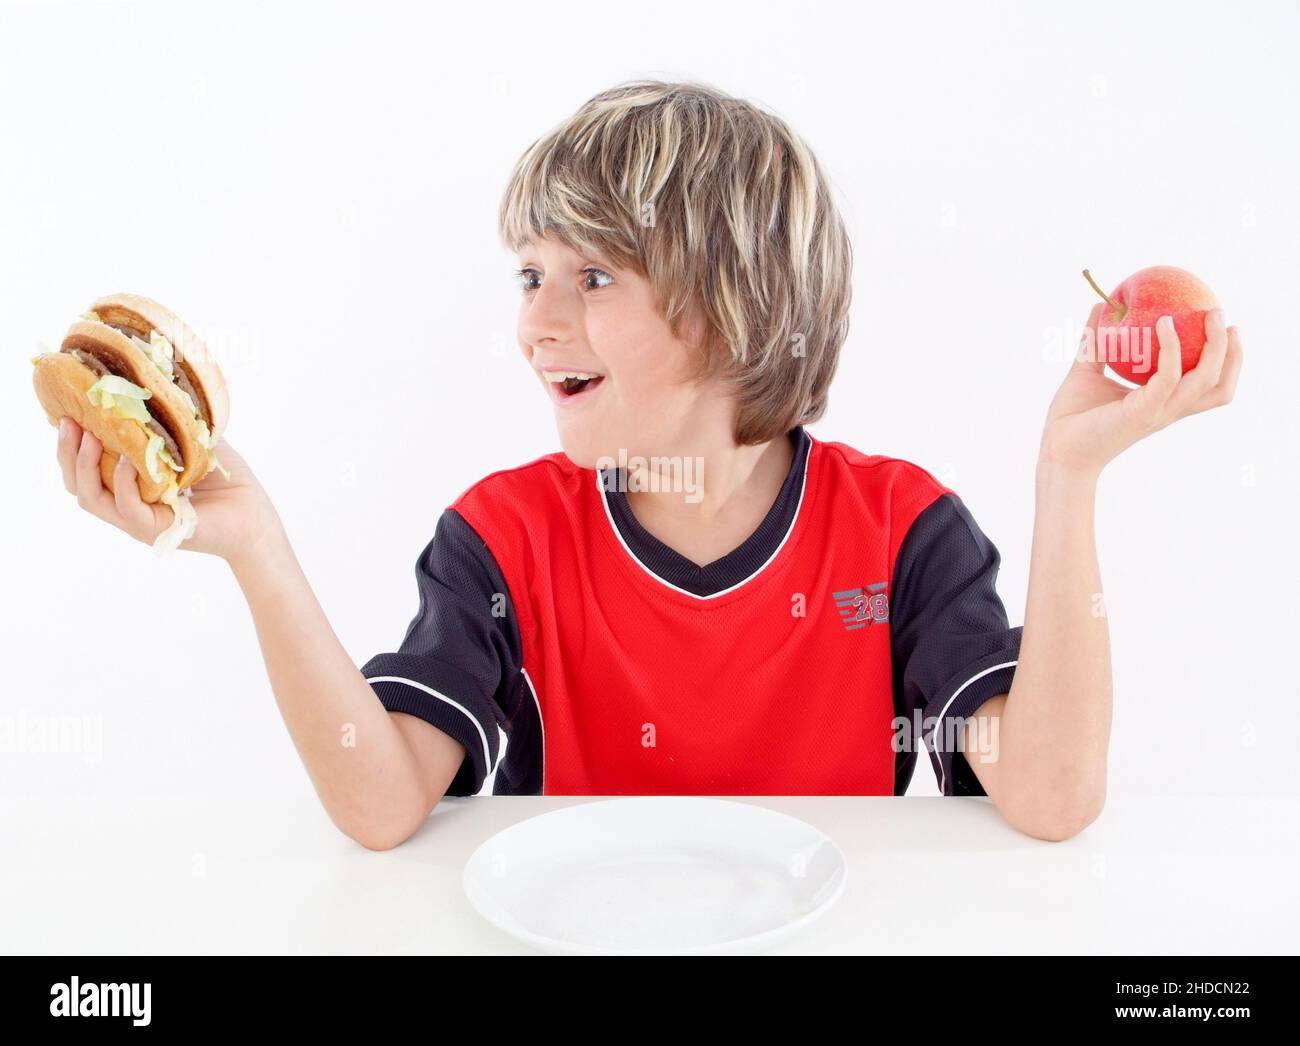 Junge mit Hamburger und Apfel, kann sich nicht entscheiden, Burger oder Apfel, Stock Photo